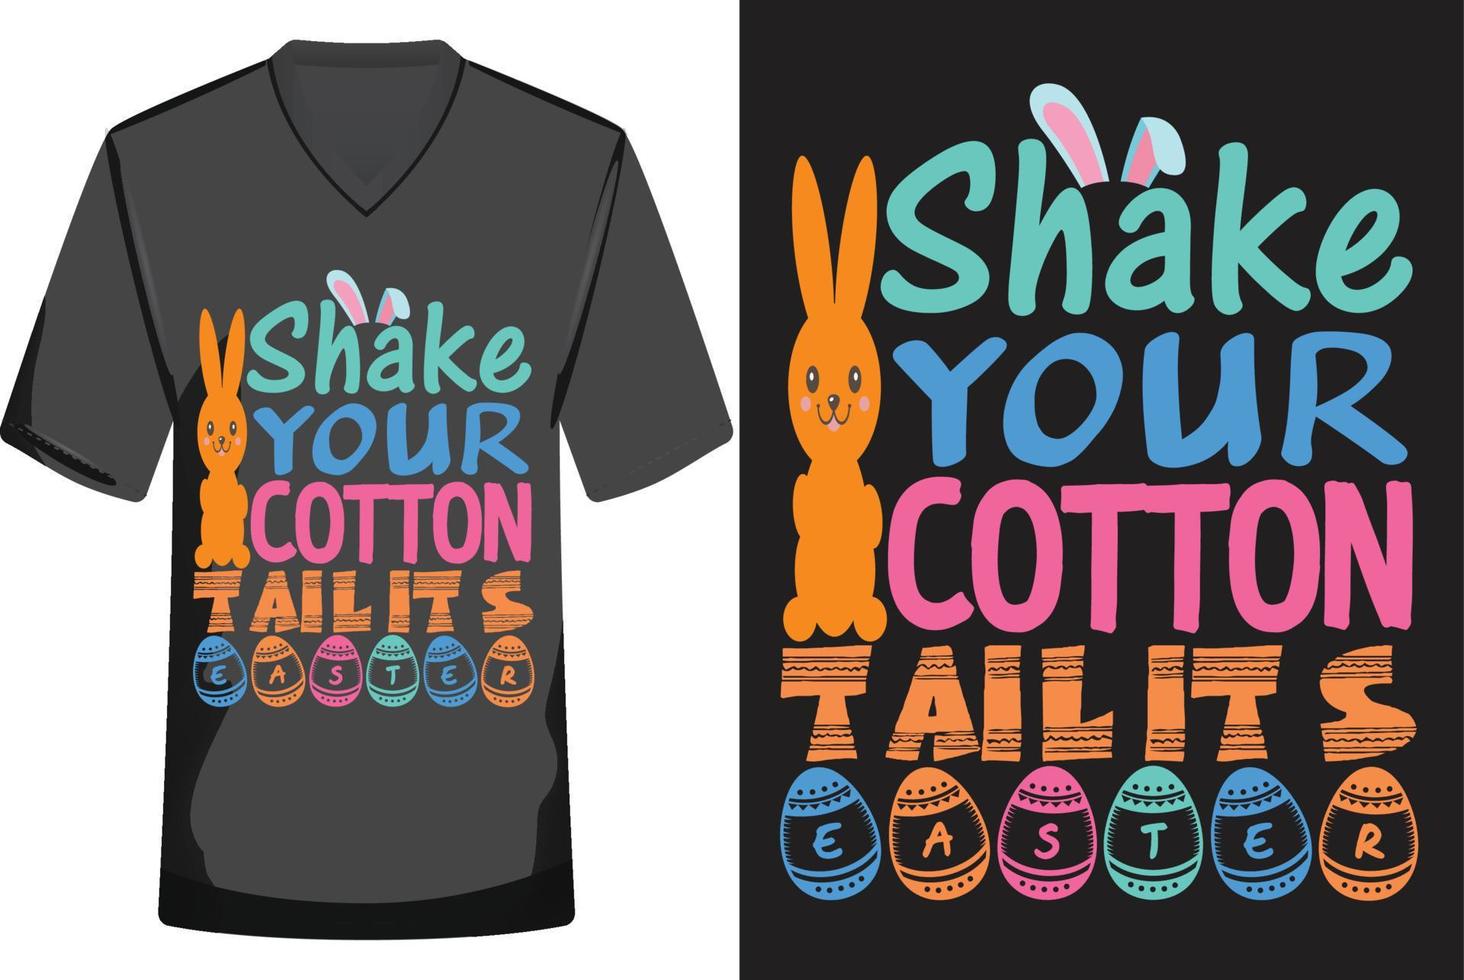 gelukkig Pasen t-shirt ontwerp vector